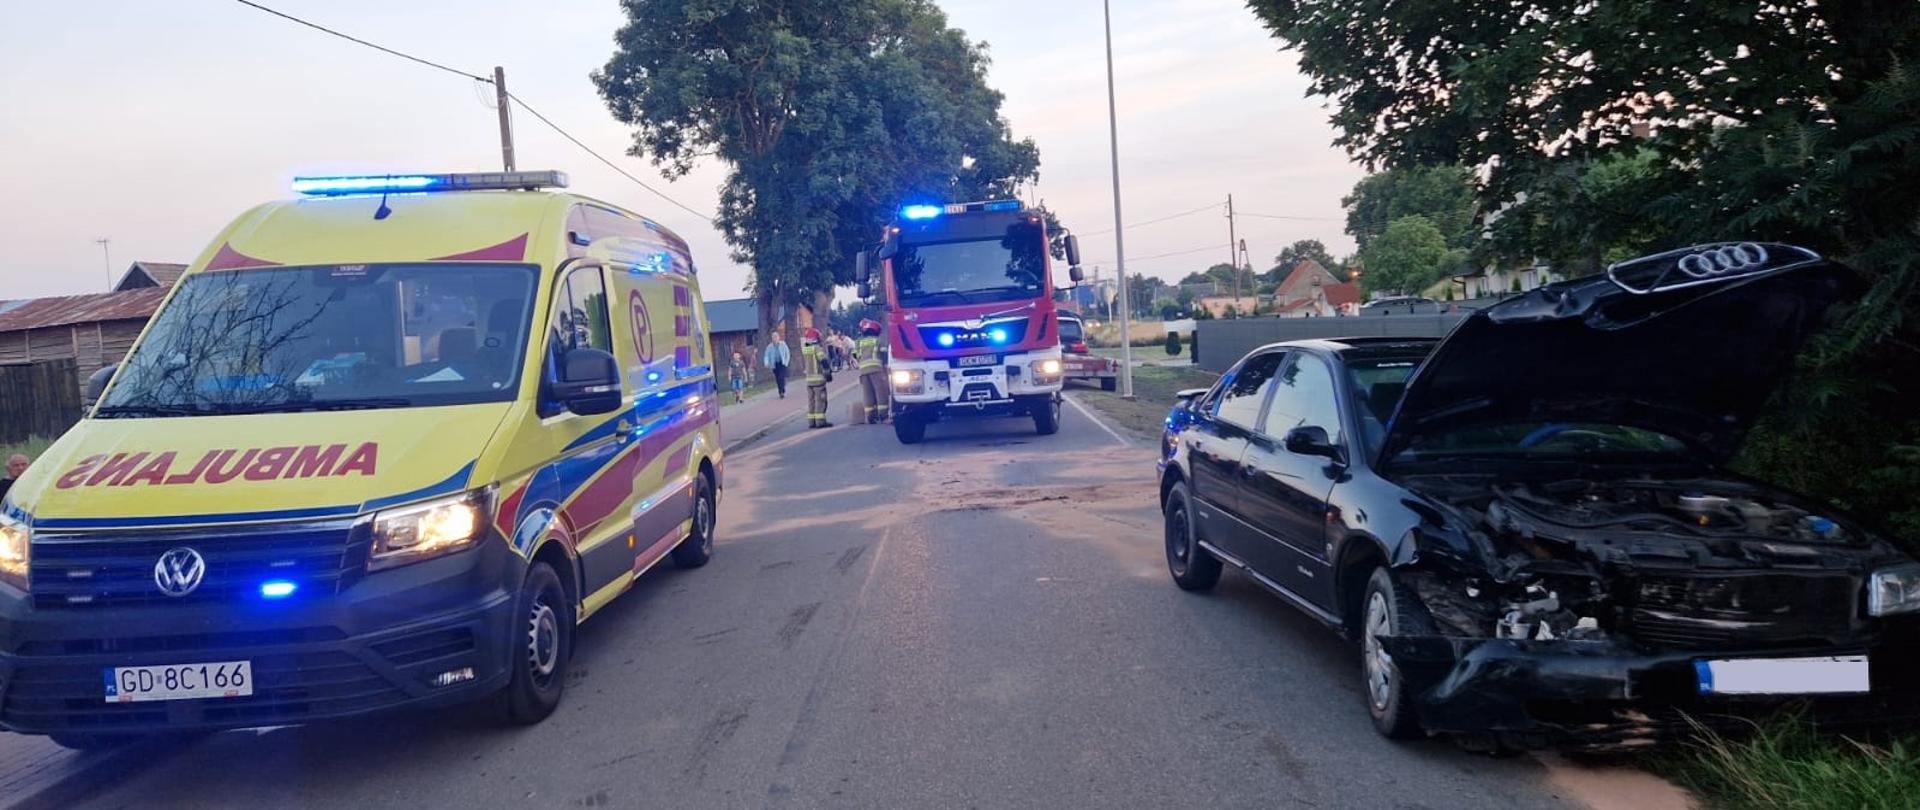 Na ulicy stoi ambulans Zespołu Ratownictwa Medycznego, samochód pożarniczy oraz samochód biorący udział w wypadku.